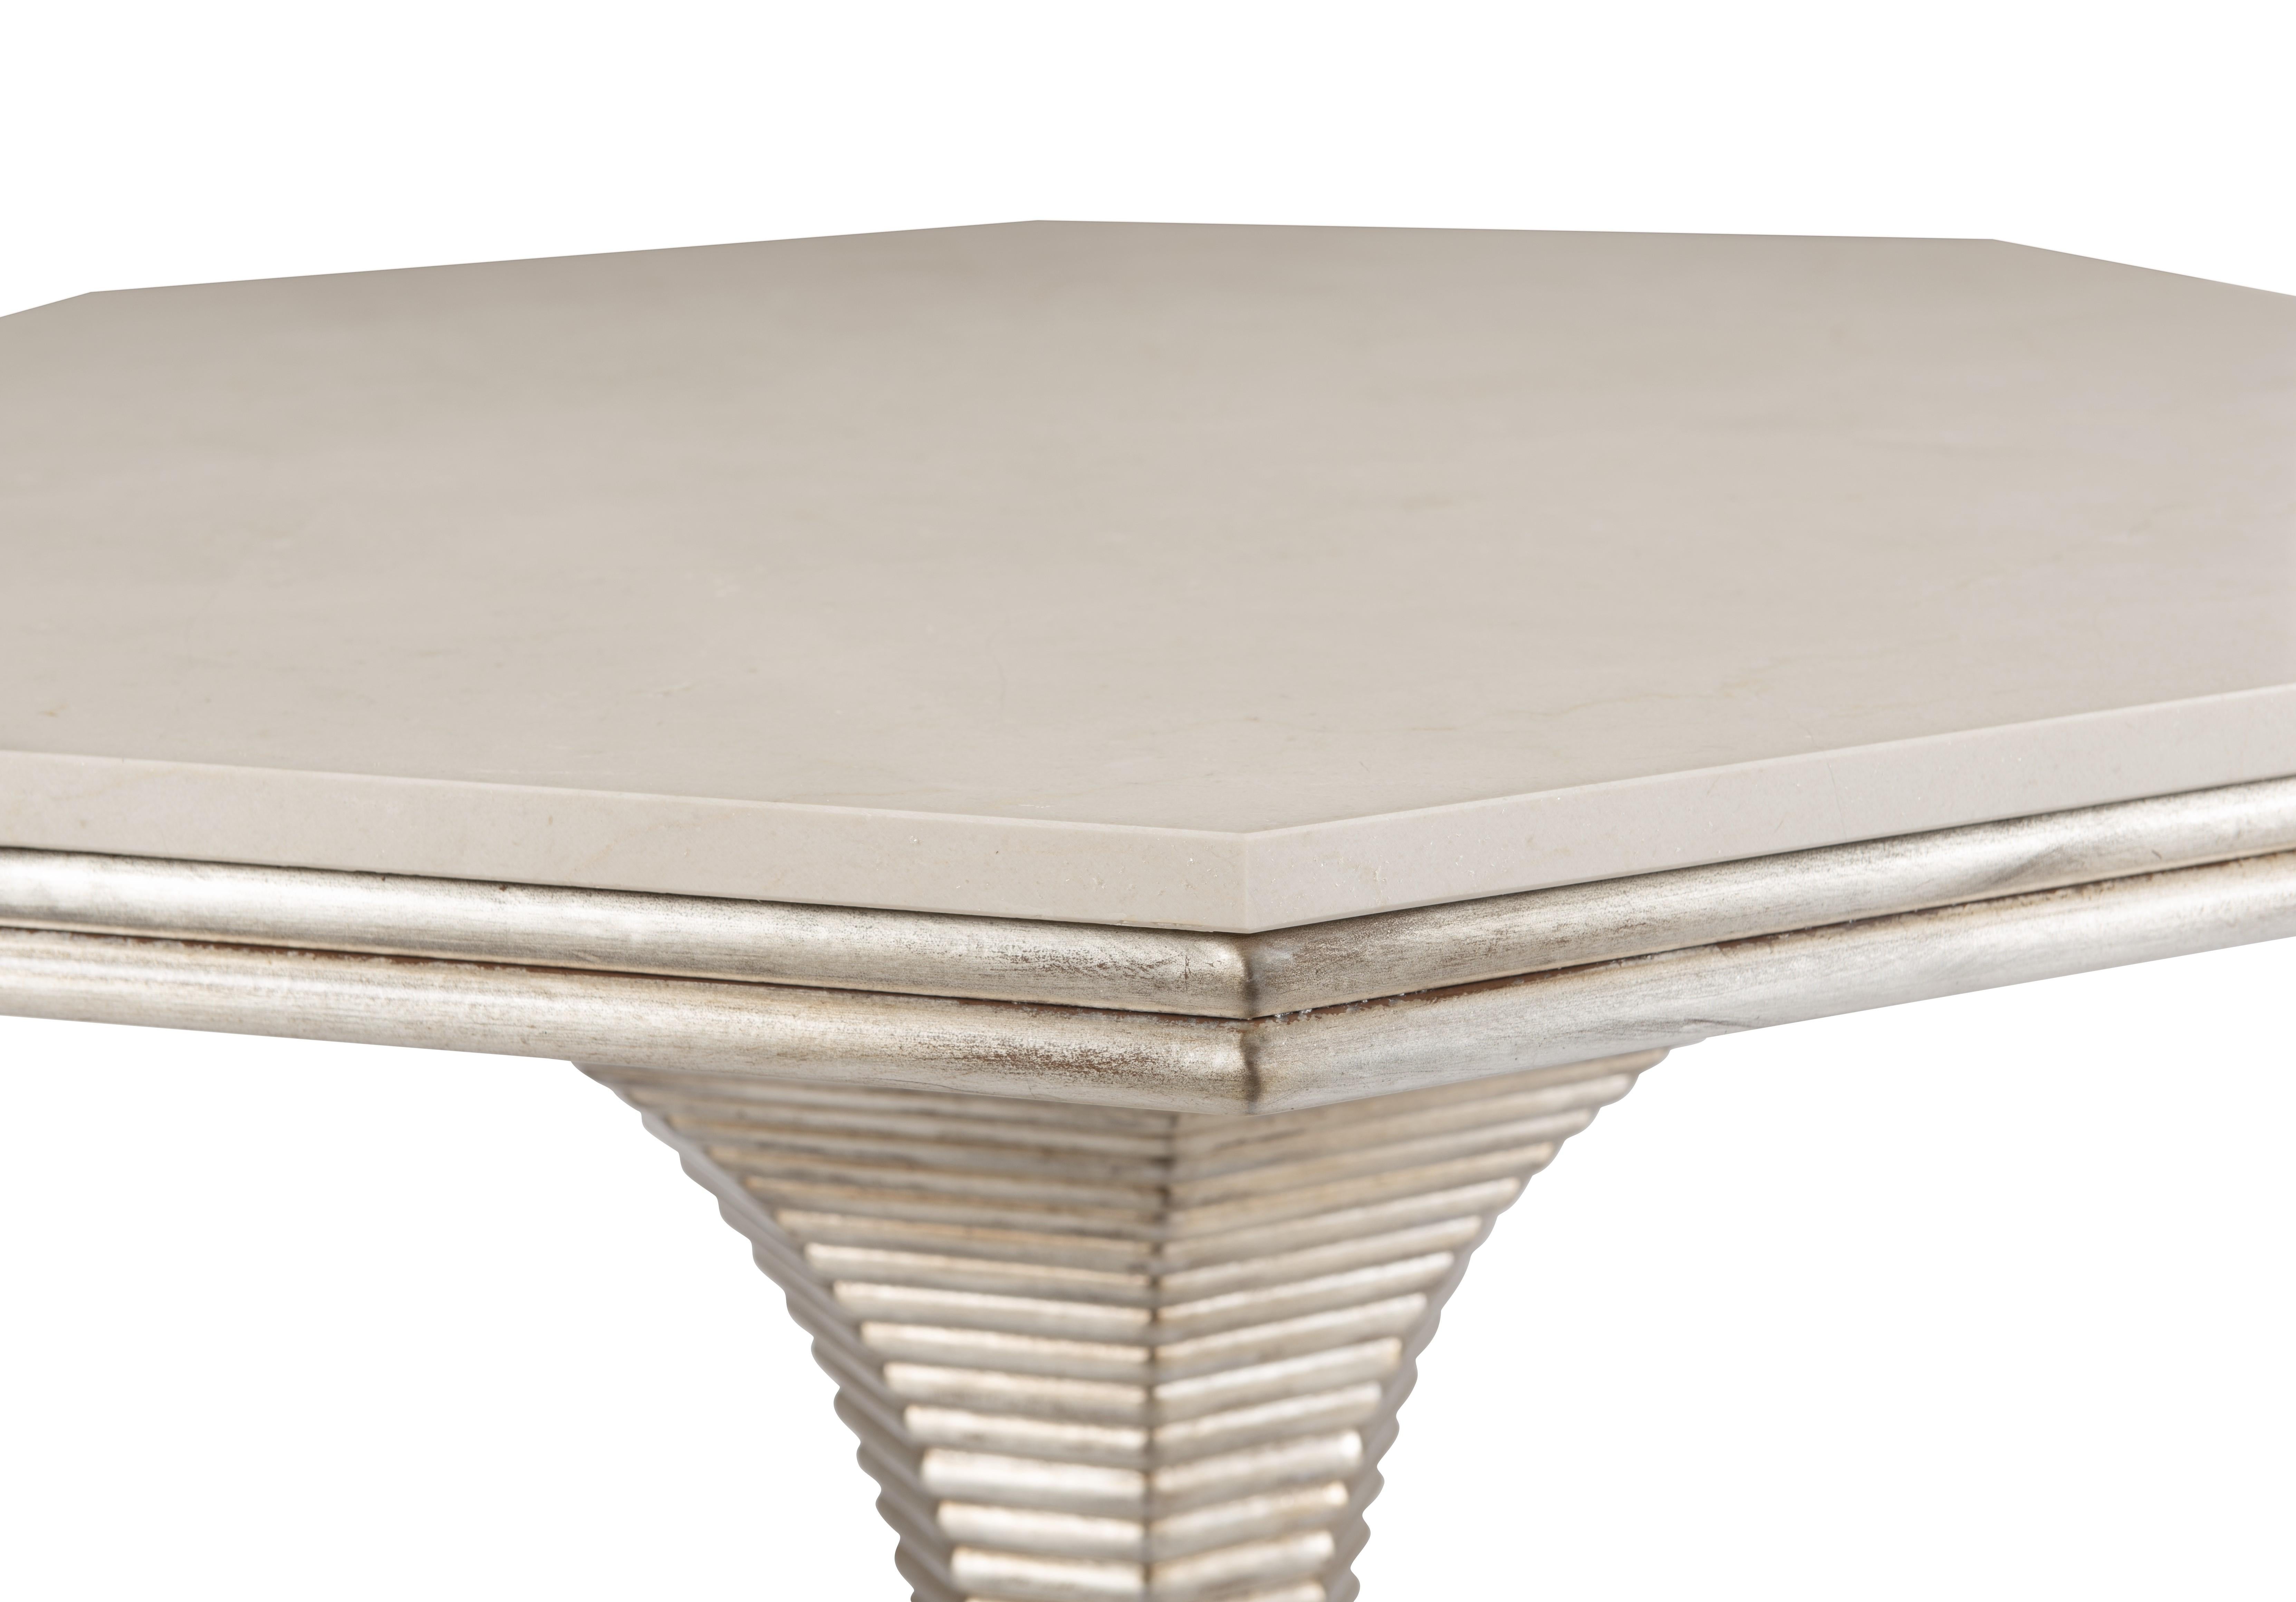 Die Steinplatte des Hourglass Table ist aus Crema Marfil-Marmor gefertigt, einem Material mit einzigartigen und schönen Variationen. Es ist bekannt für seine schöne cremefarbene Farbe mit hellbraunen Untertönen sowie für seine zarte Äderung und